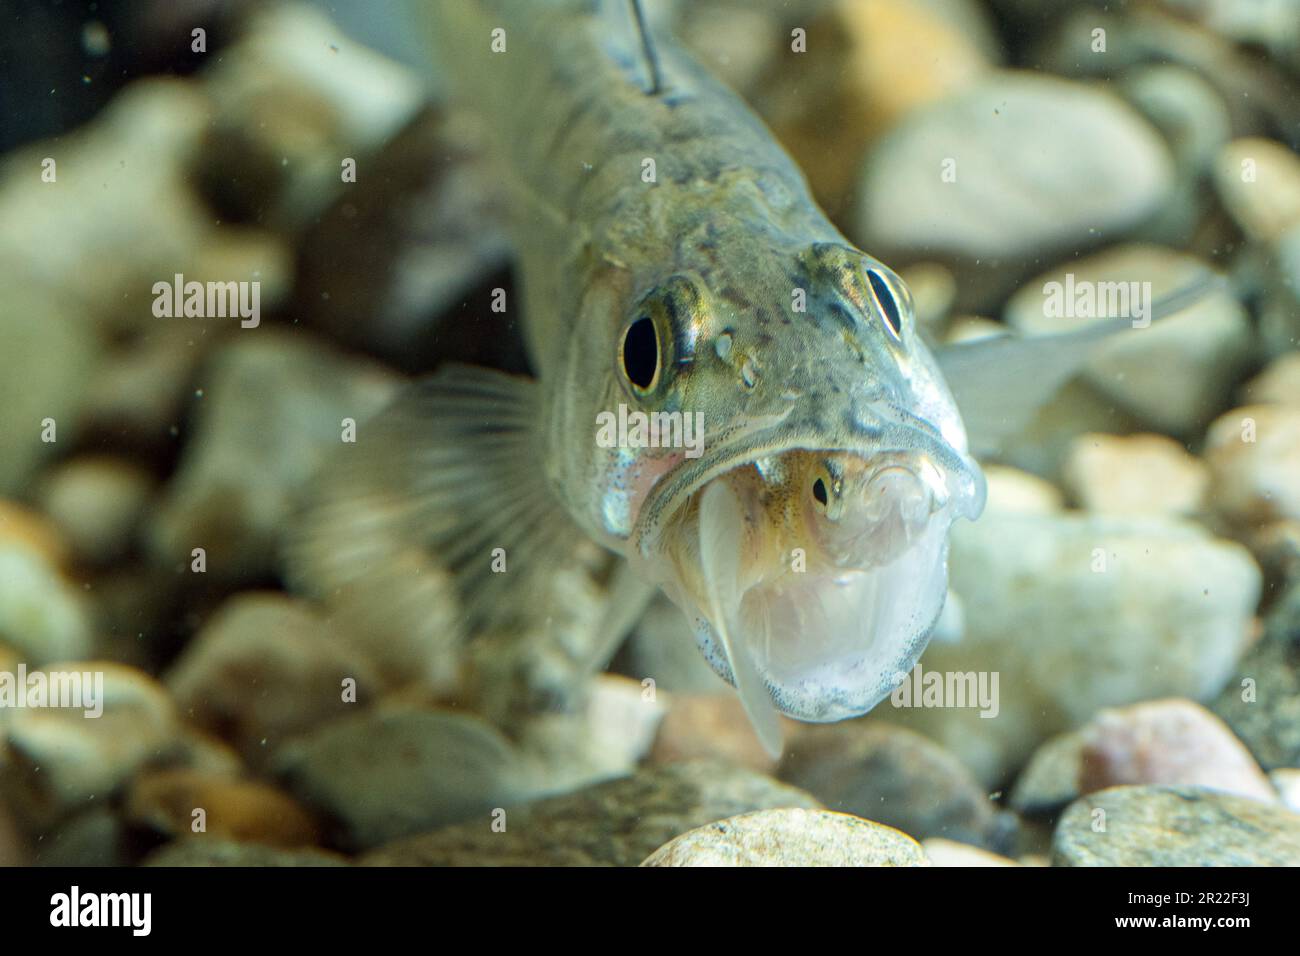 pike-perch, zander (Stizostedion lucioperca, Sander lucioperca), juvenile, eating fish, Germany Stock Photo